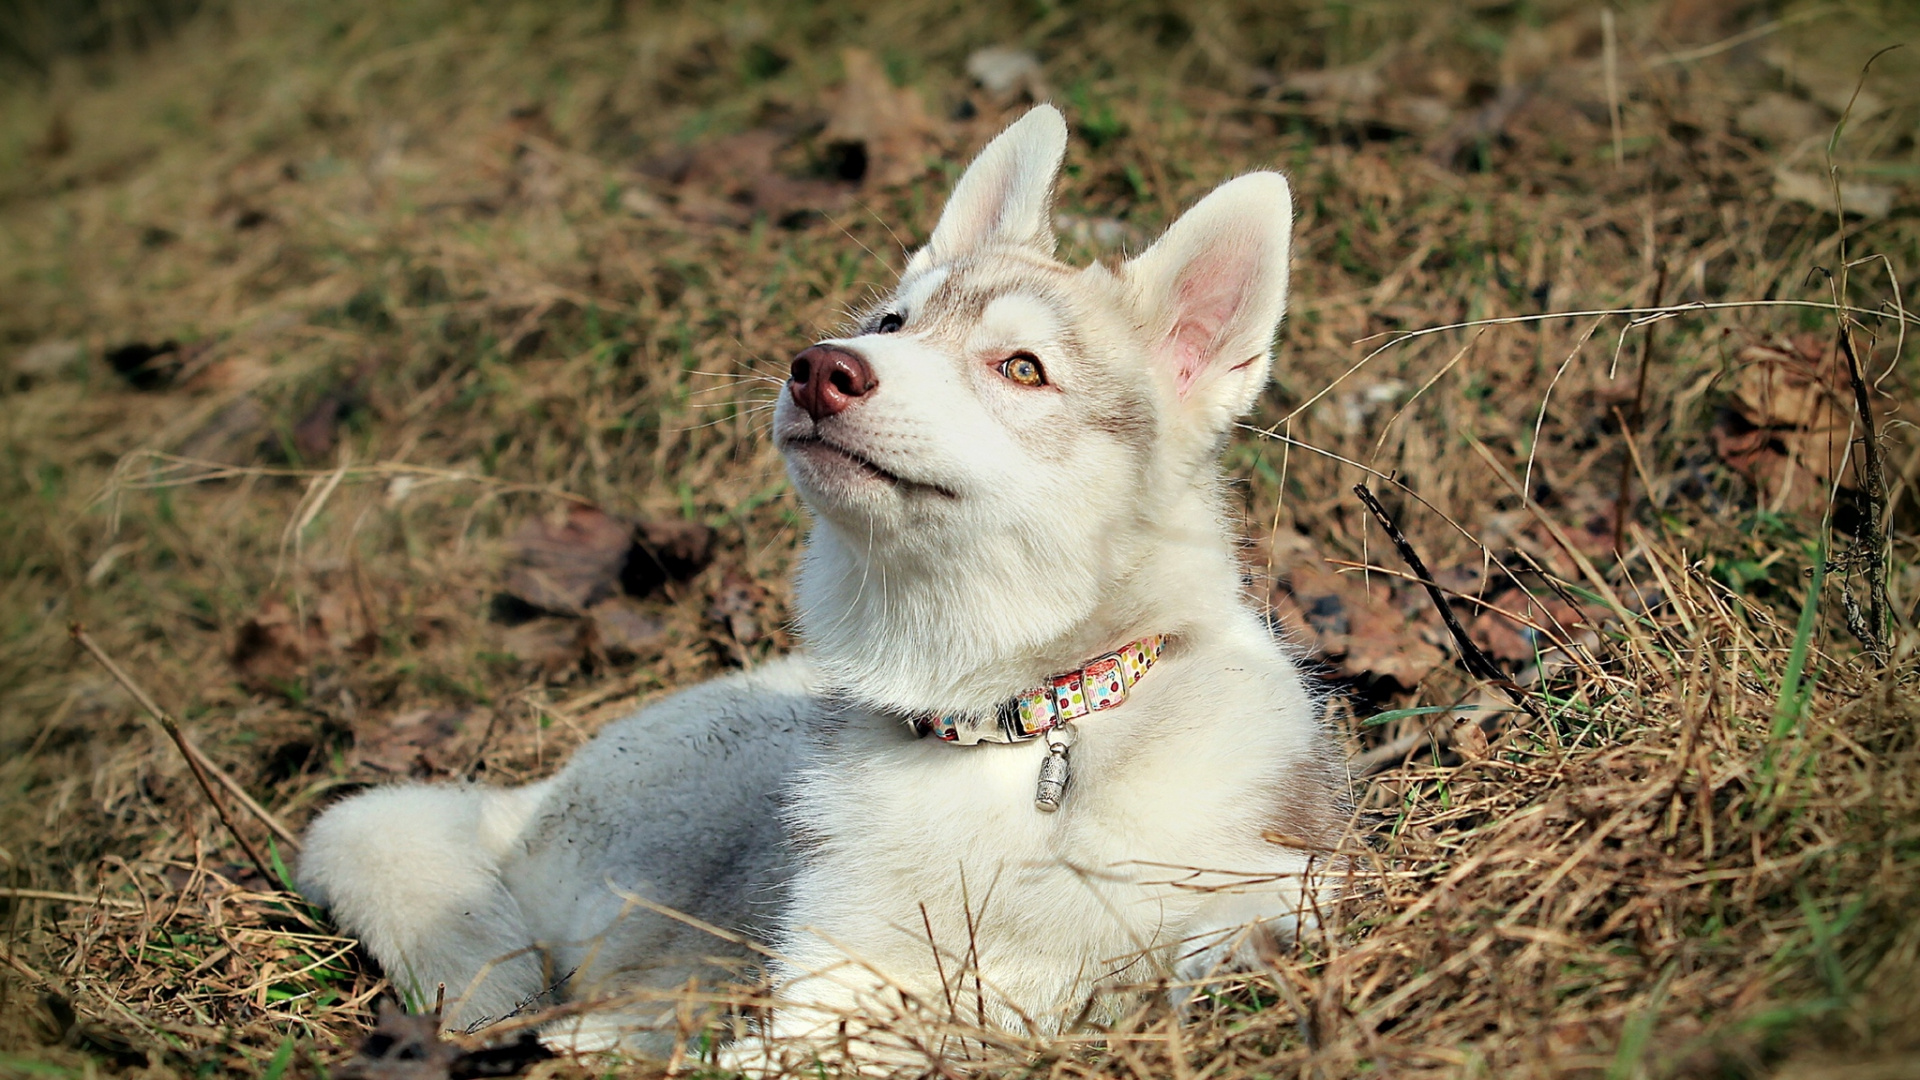 赫斯基, 品种的狗, 小狗, 捷克斯洛伐克那只狼狗, 北方的因纽特人的狗 壁纸 1920x1080 允许